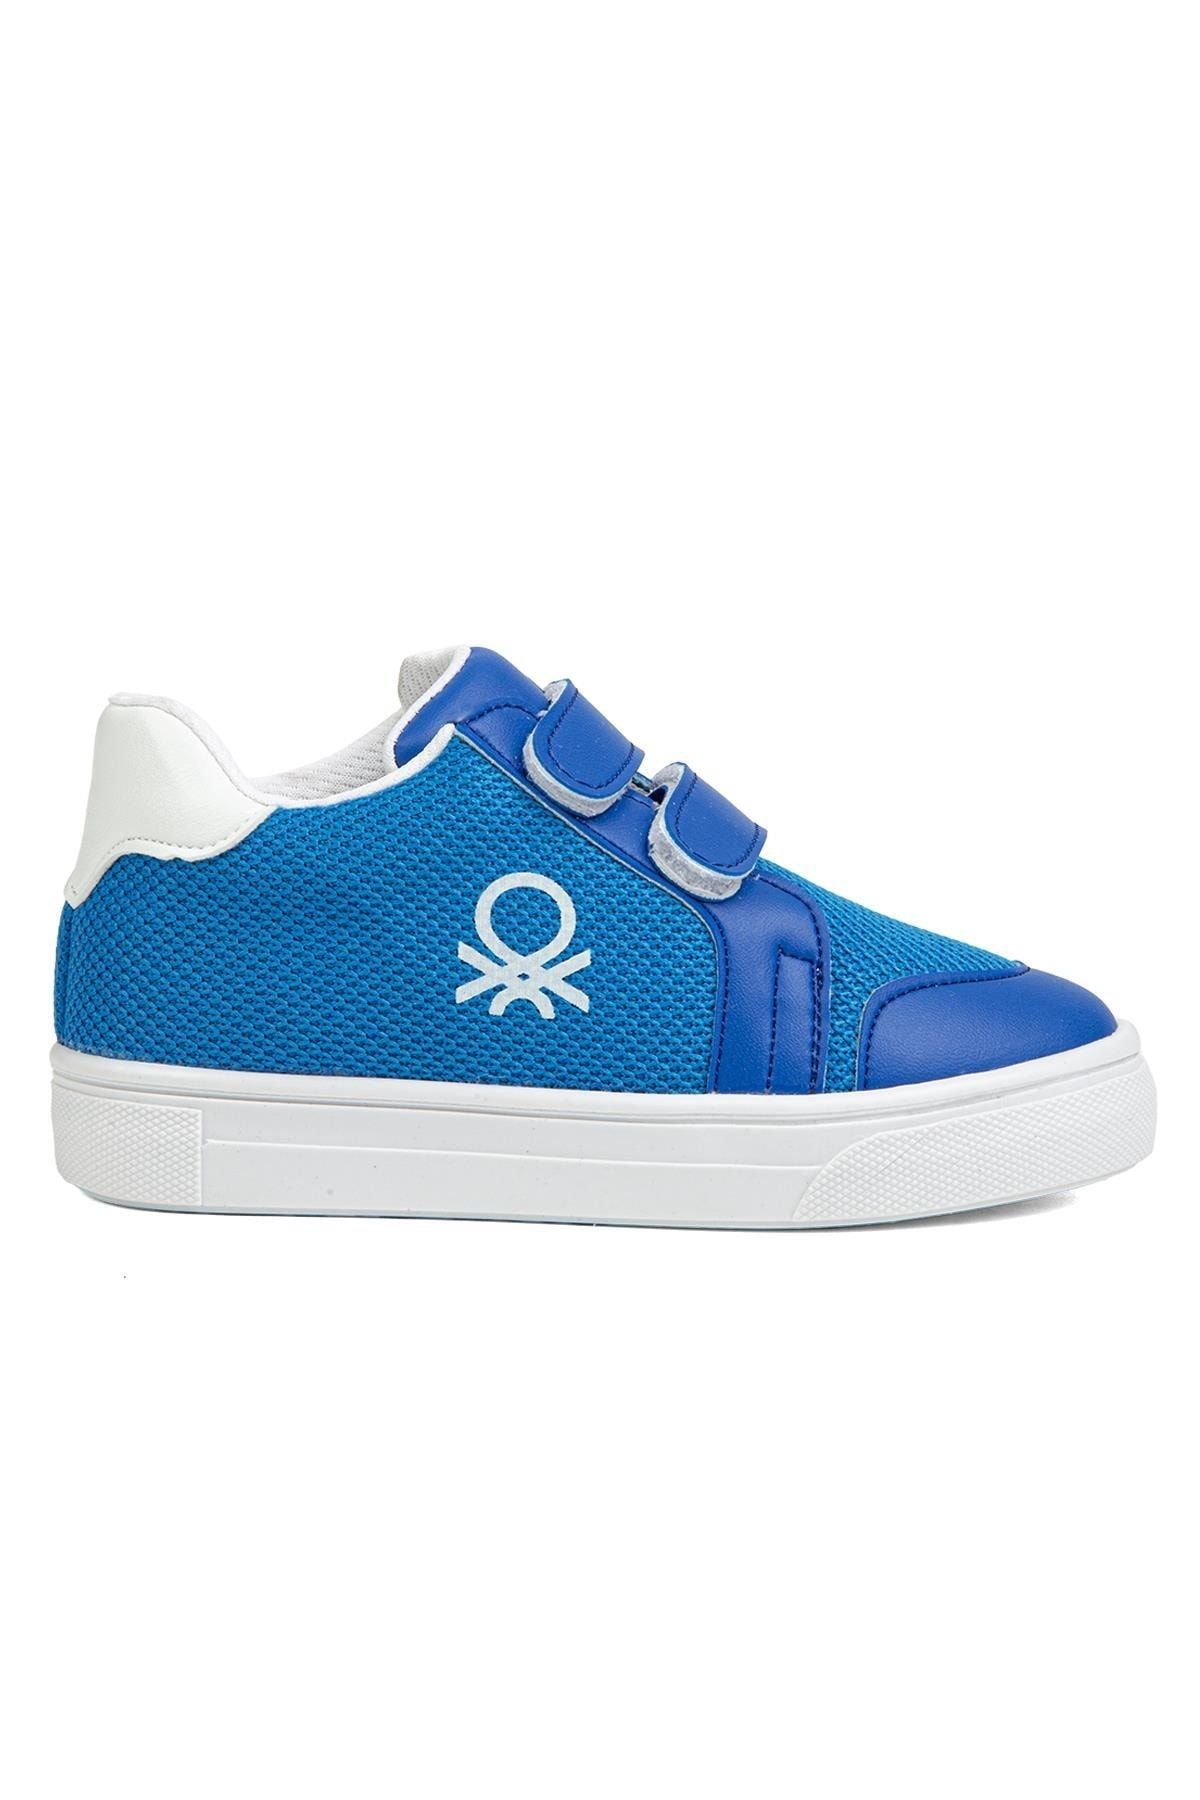 Benetton ® |bn-1248- Saks Mavi - Çocuk Spor Ayakkabı